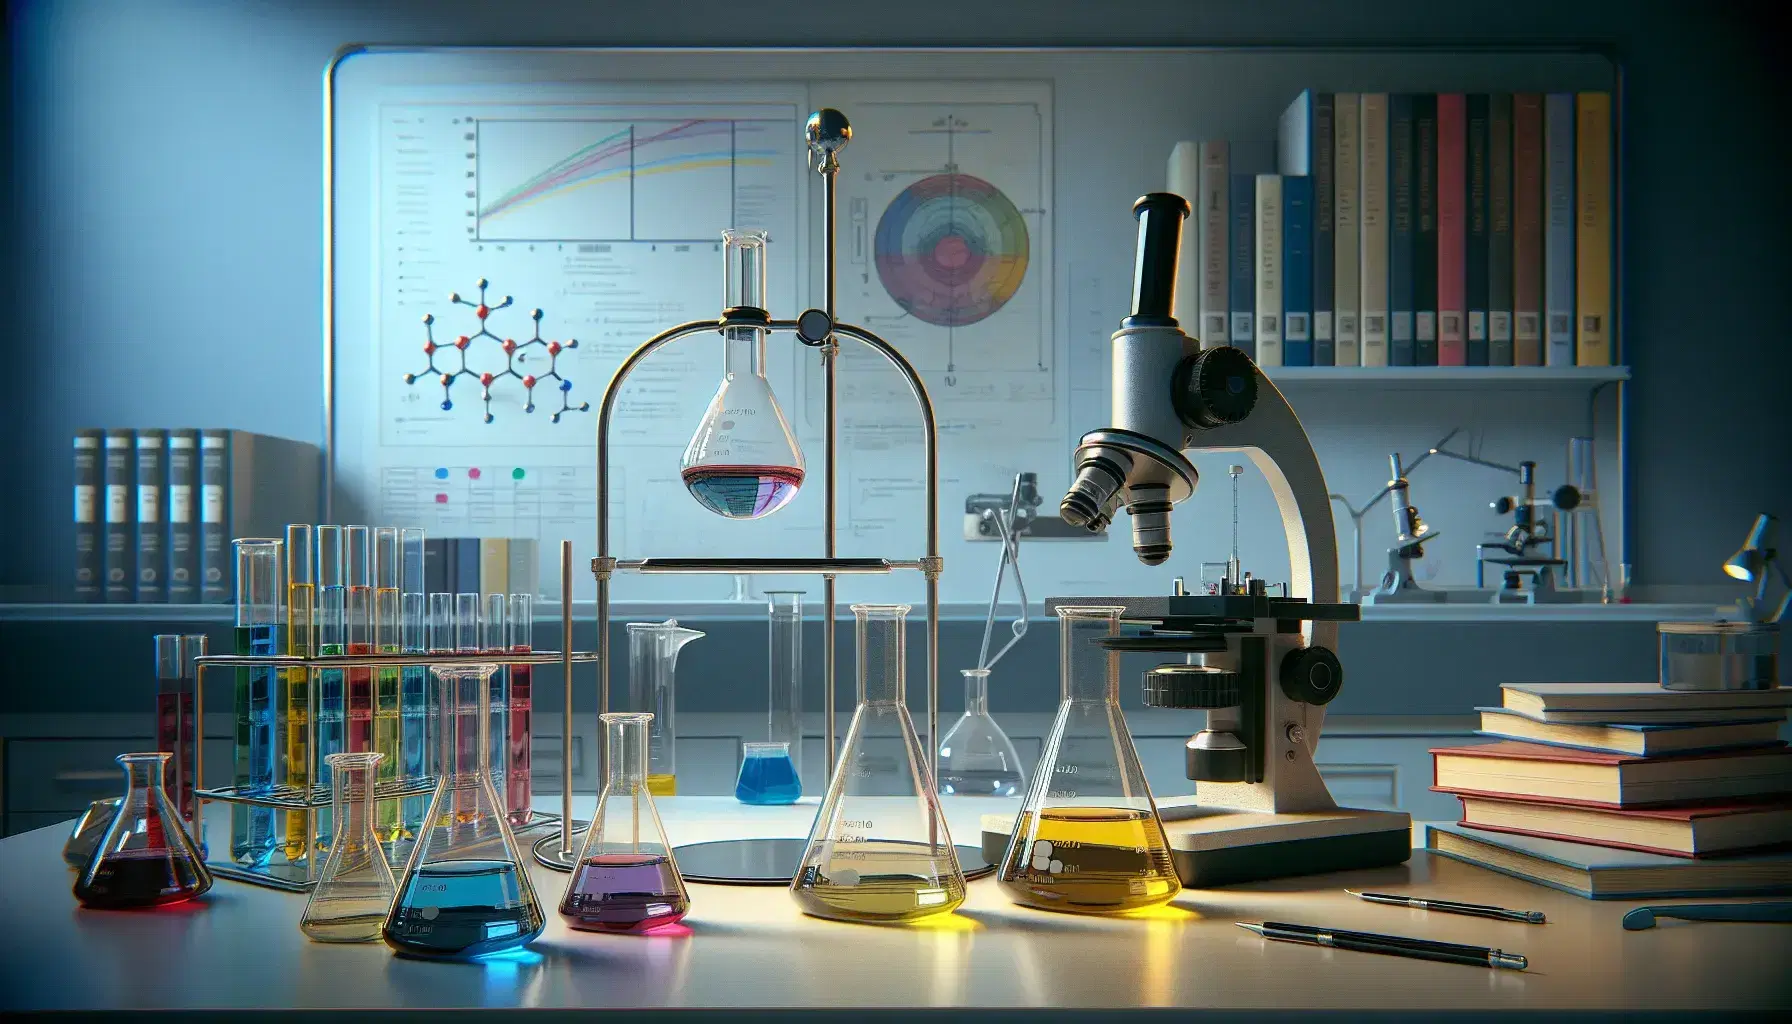 Laboratorio científico con mesa de trabajo, Erlenmeyers con soluciones de colores, embudo de separación y microscopio, fondo con pizarra y estantería de libros.